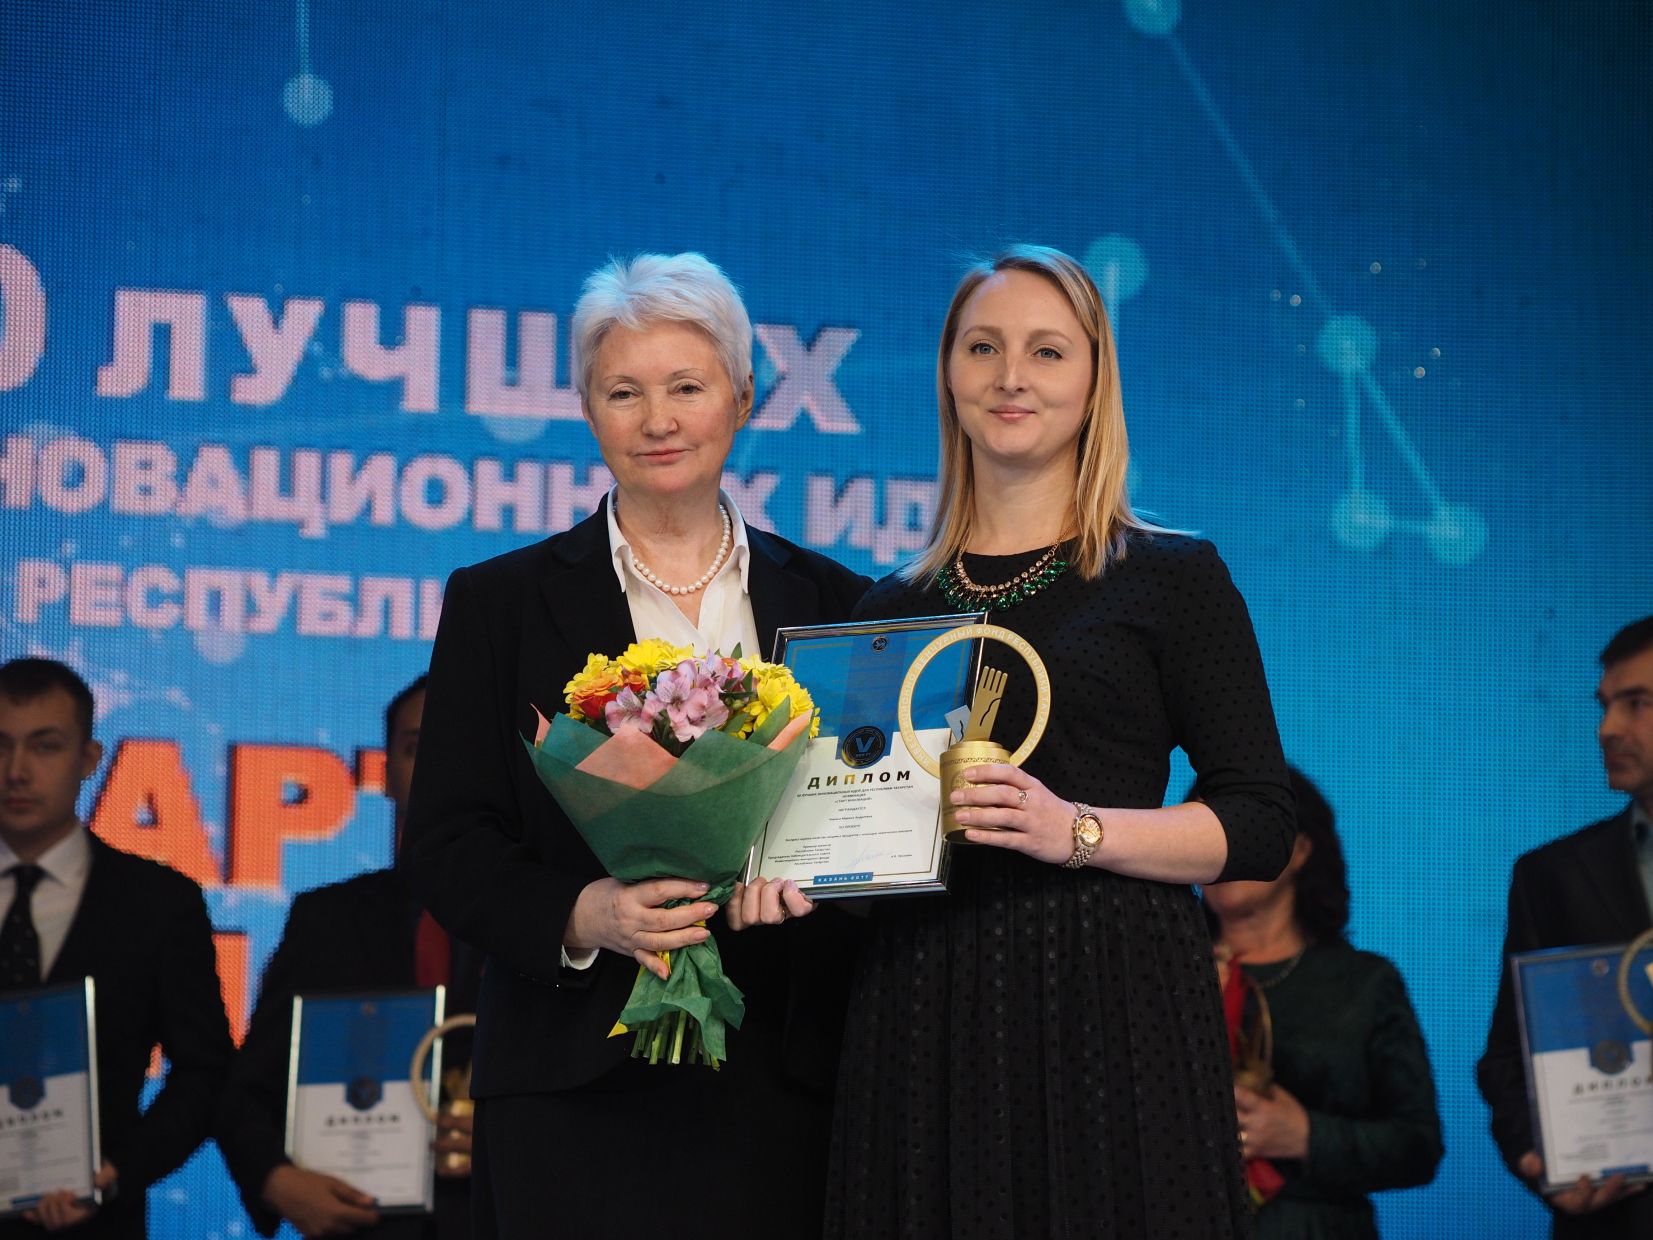 Менделеевцы, осталось 30 дней для того, чтобы подать заявку на конкурс «Пятьдесят лучших инновационных идей для Республики Татарстан»